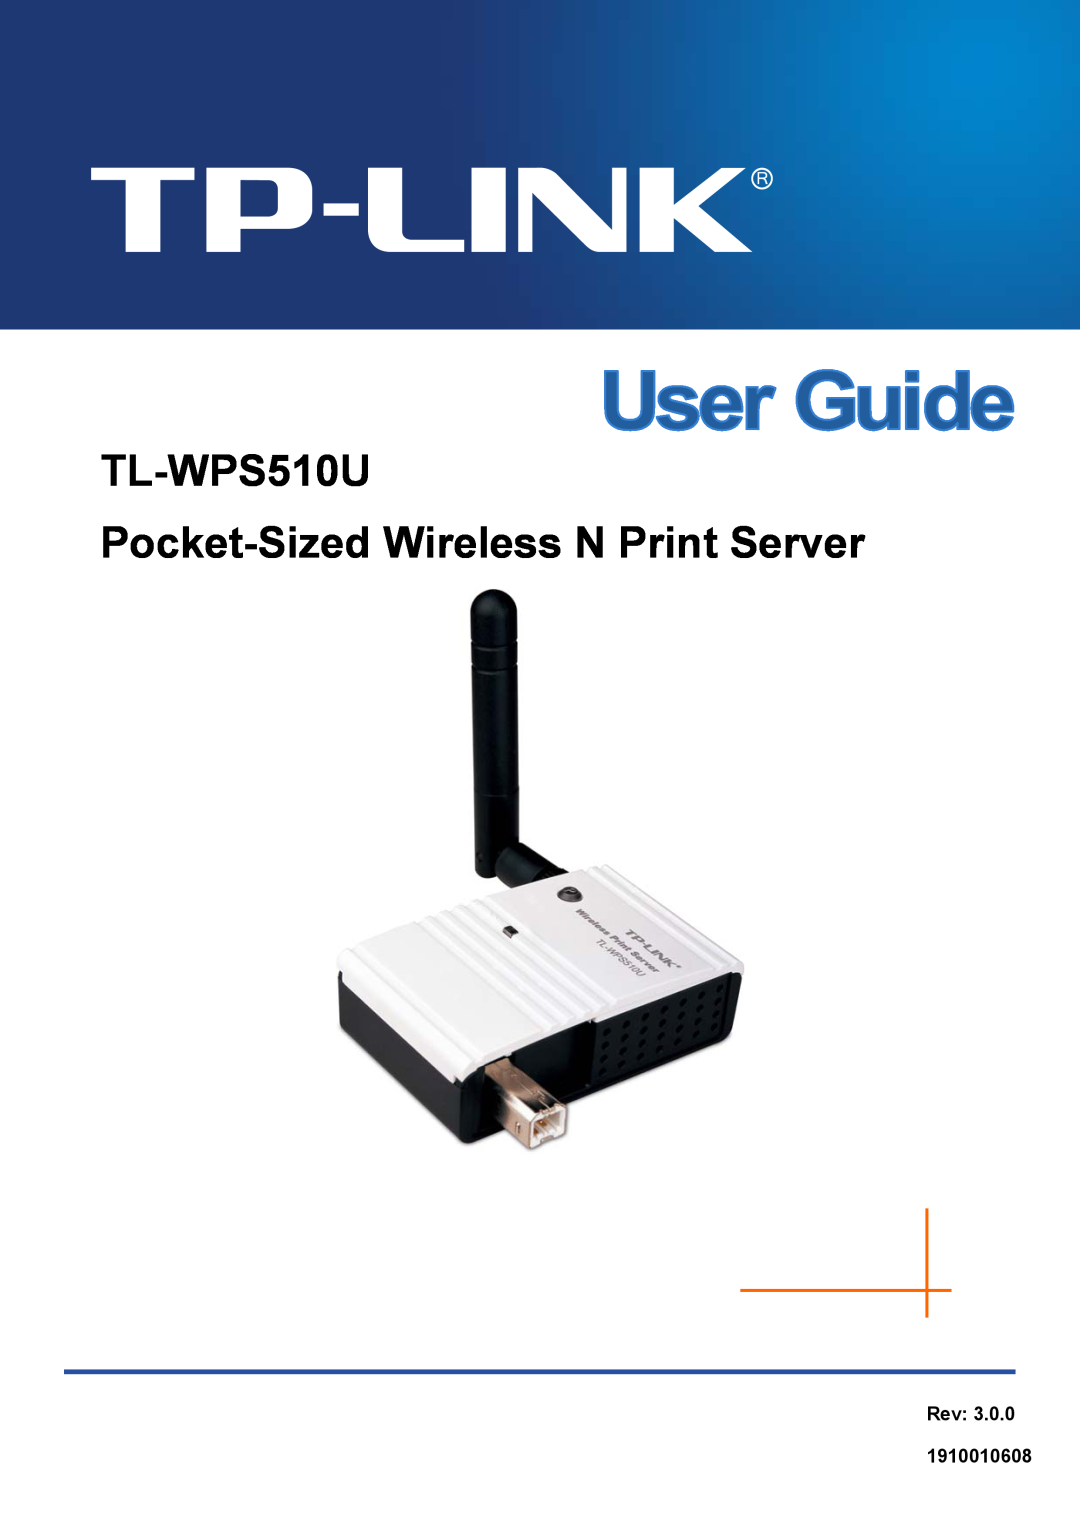 TP-Link tl-wps510u manual TL-WPS510U Pocket-Sized Wireless N Print Server, Rev 1910010608 